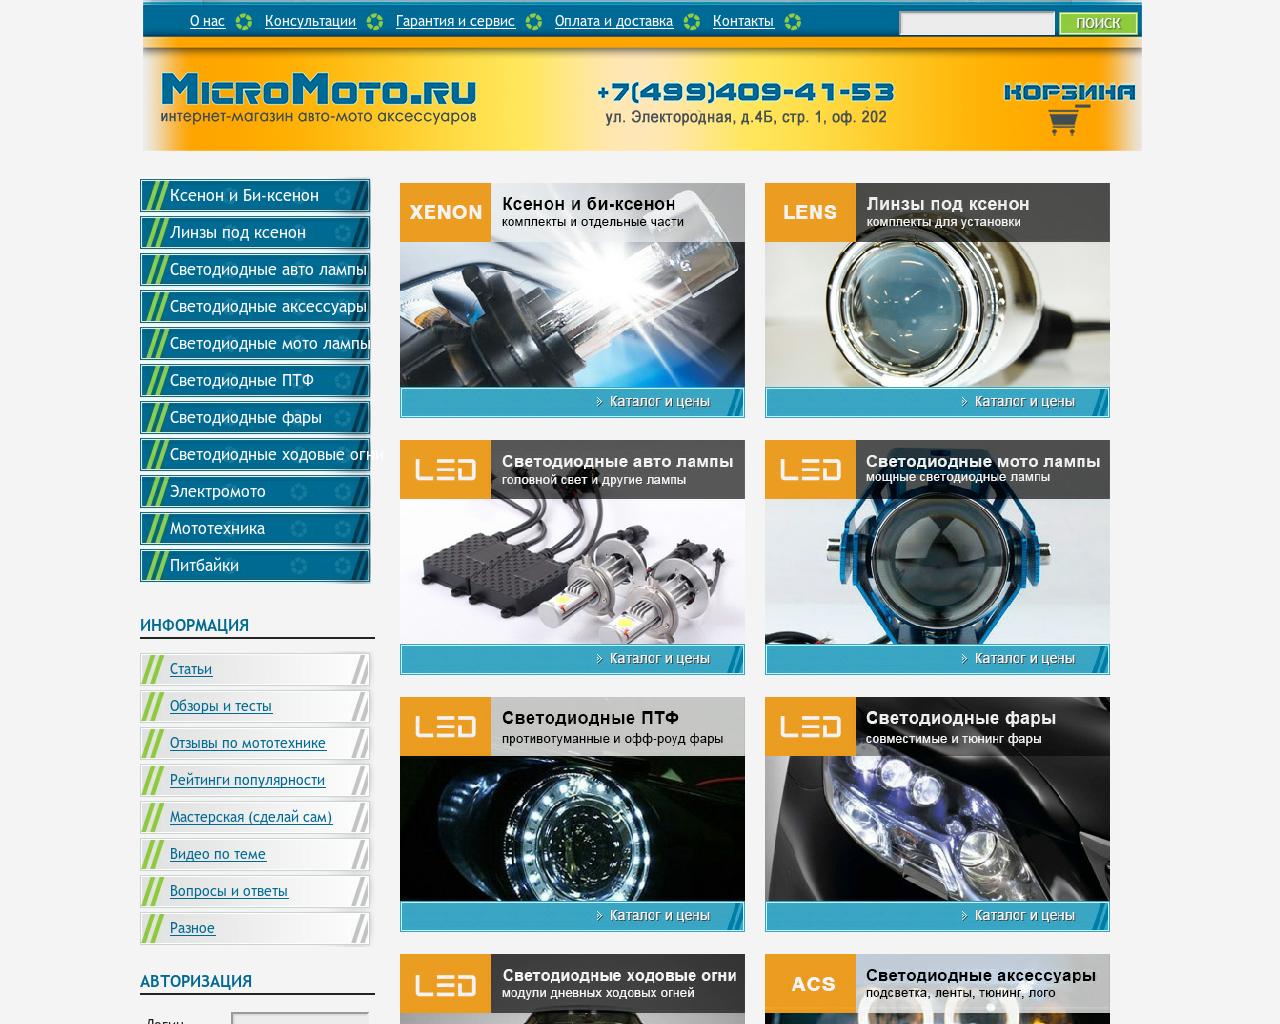 Изображение сайта micromoto.ru в разрешении 1280x1024